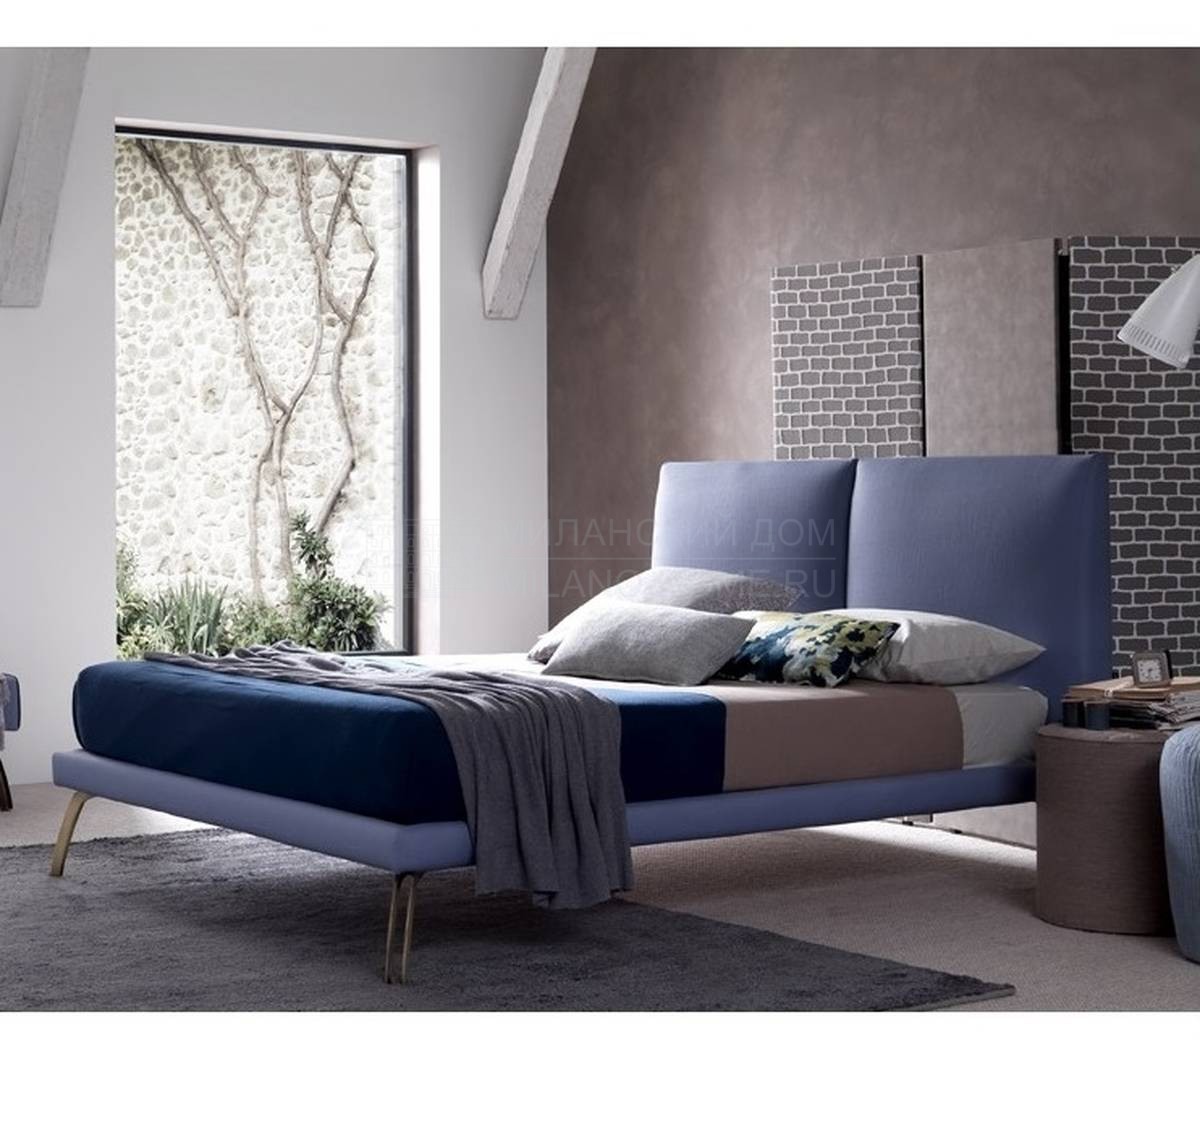 Кровать с мягким изголовьем Tallis Sottile из Италии фабрики BOLZAN